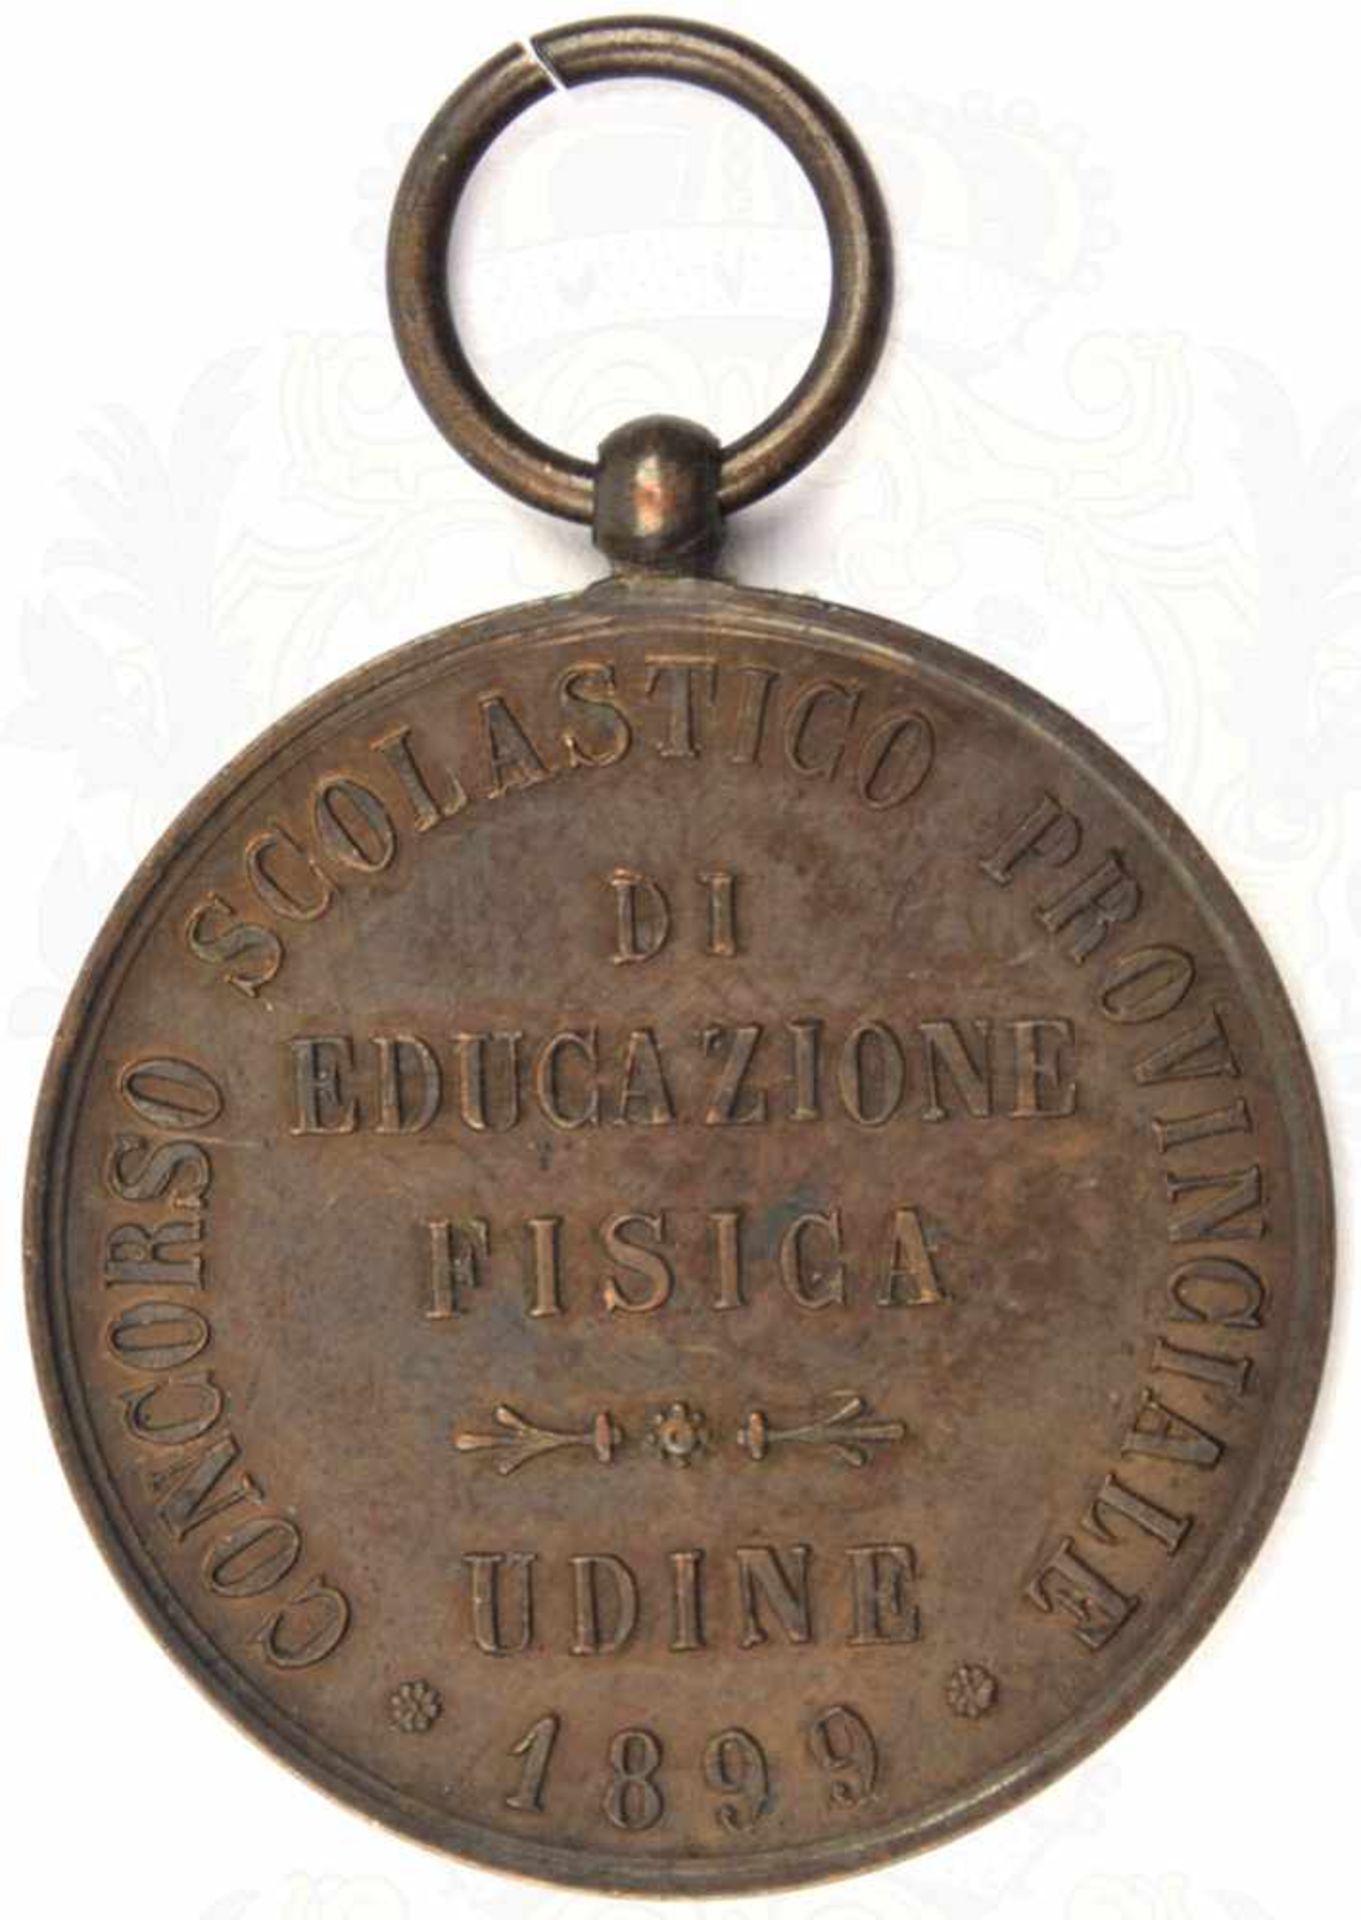 EHRENMEDAILLE einer militärischen (?) Sportschule, Udine 1899, Bronze, feinst geprägt, vs. Adler mit - Image 2 of 2